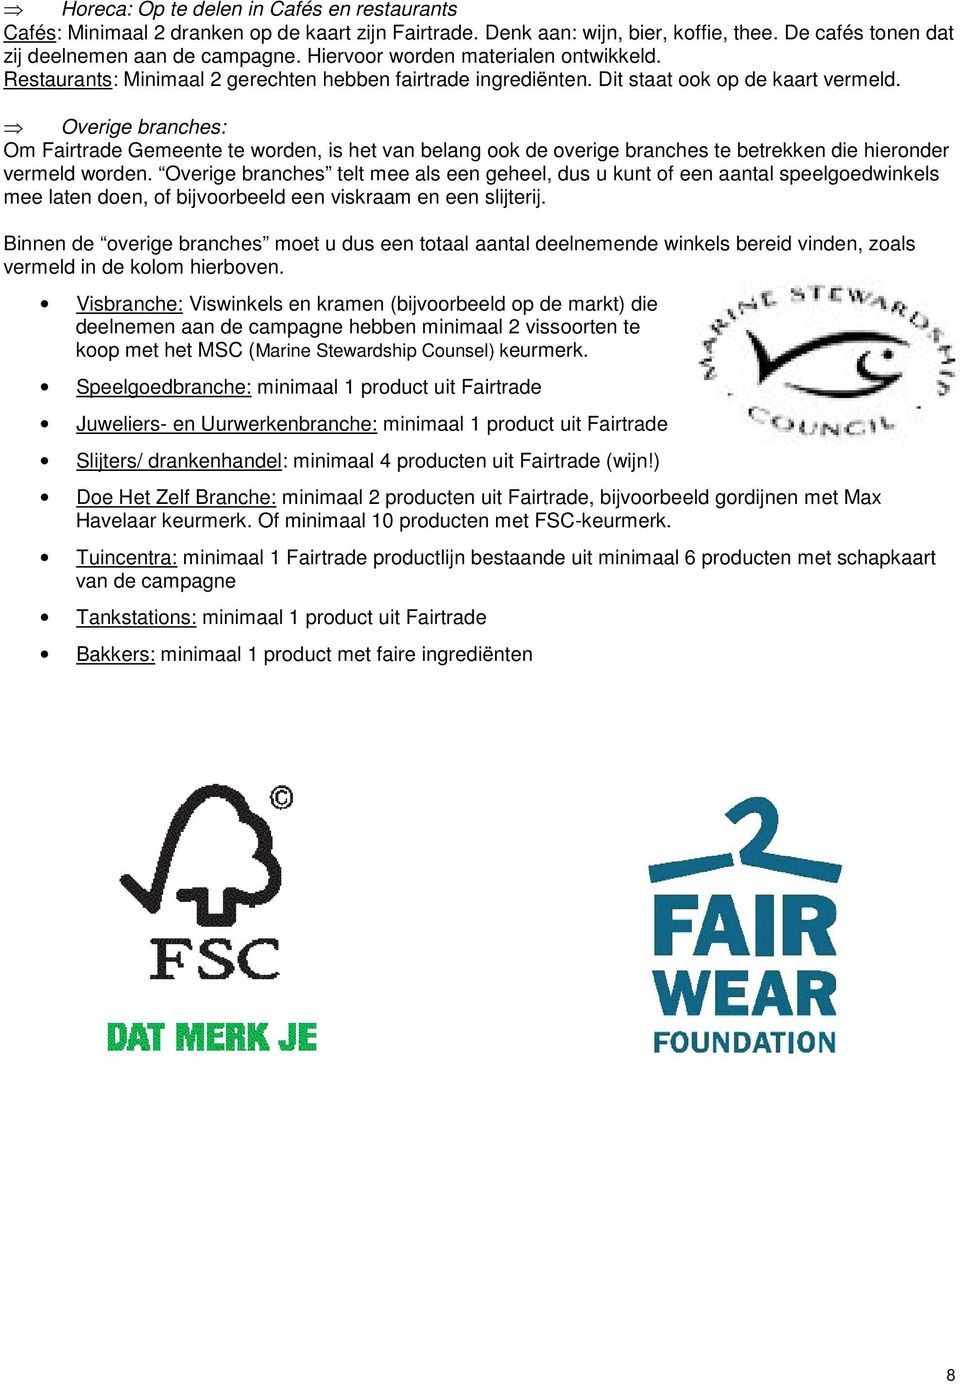 Overige branches: Om Fairtrade Gemeente te worden, is het van belang ook de overige branches te betrekken die hieronder vermeld worden.